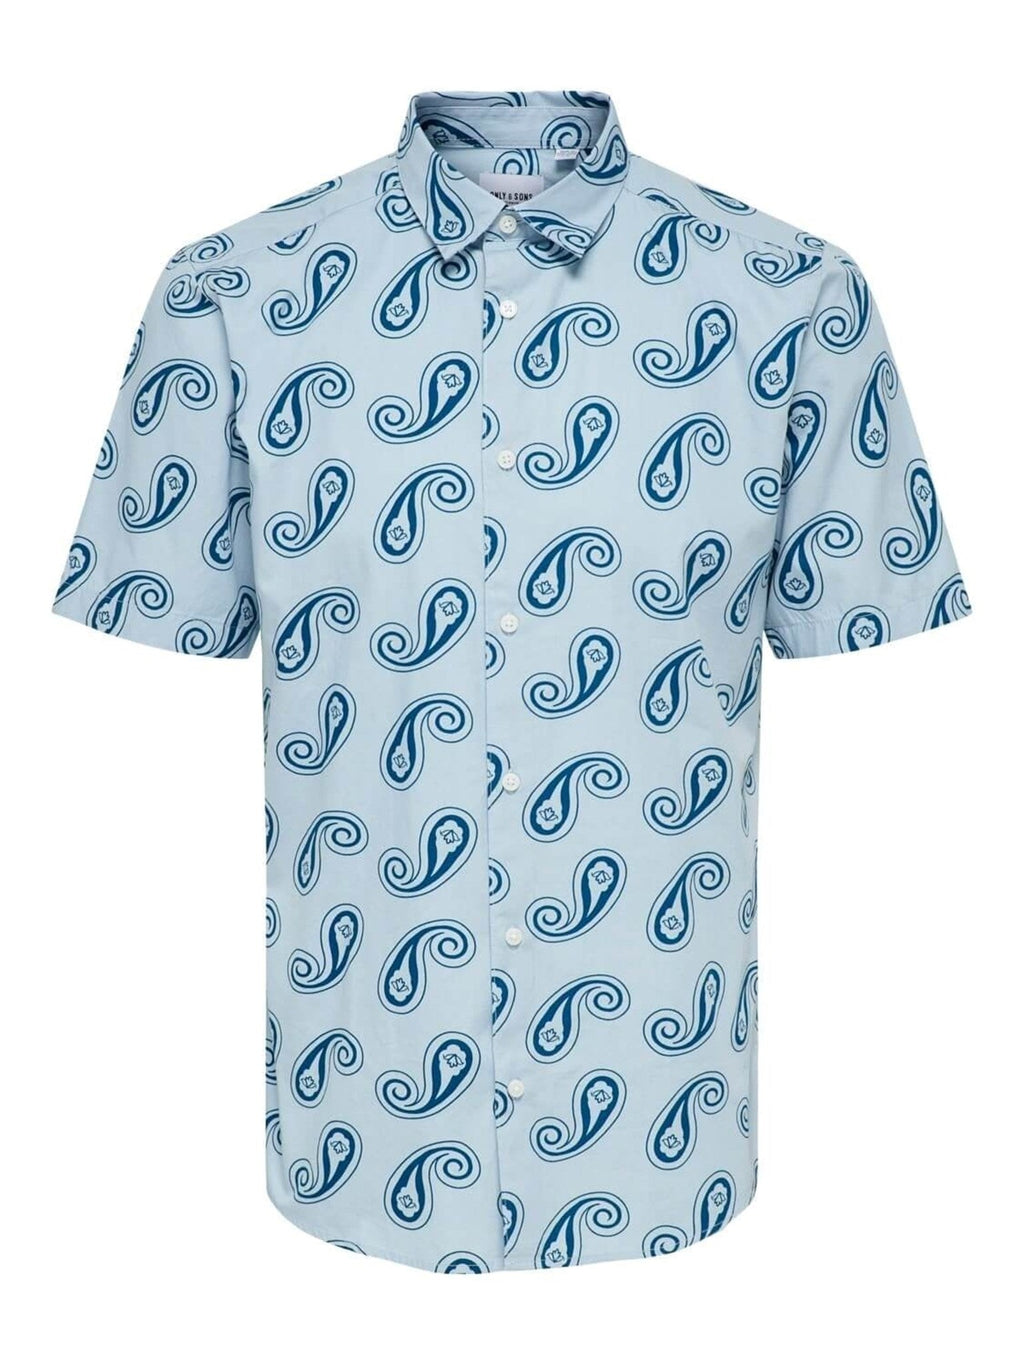 Τυπωμένο κοντό μανίκι πουκάμισο - ανοιχτό μπλε